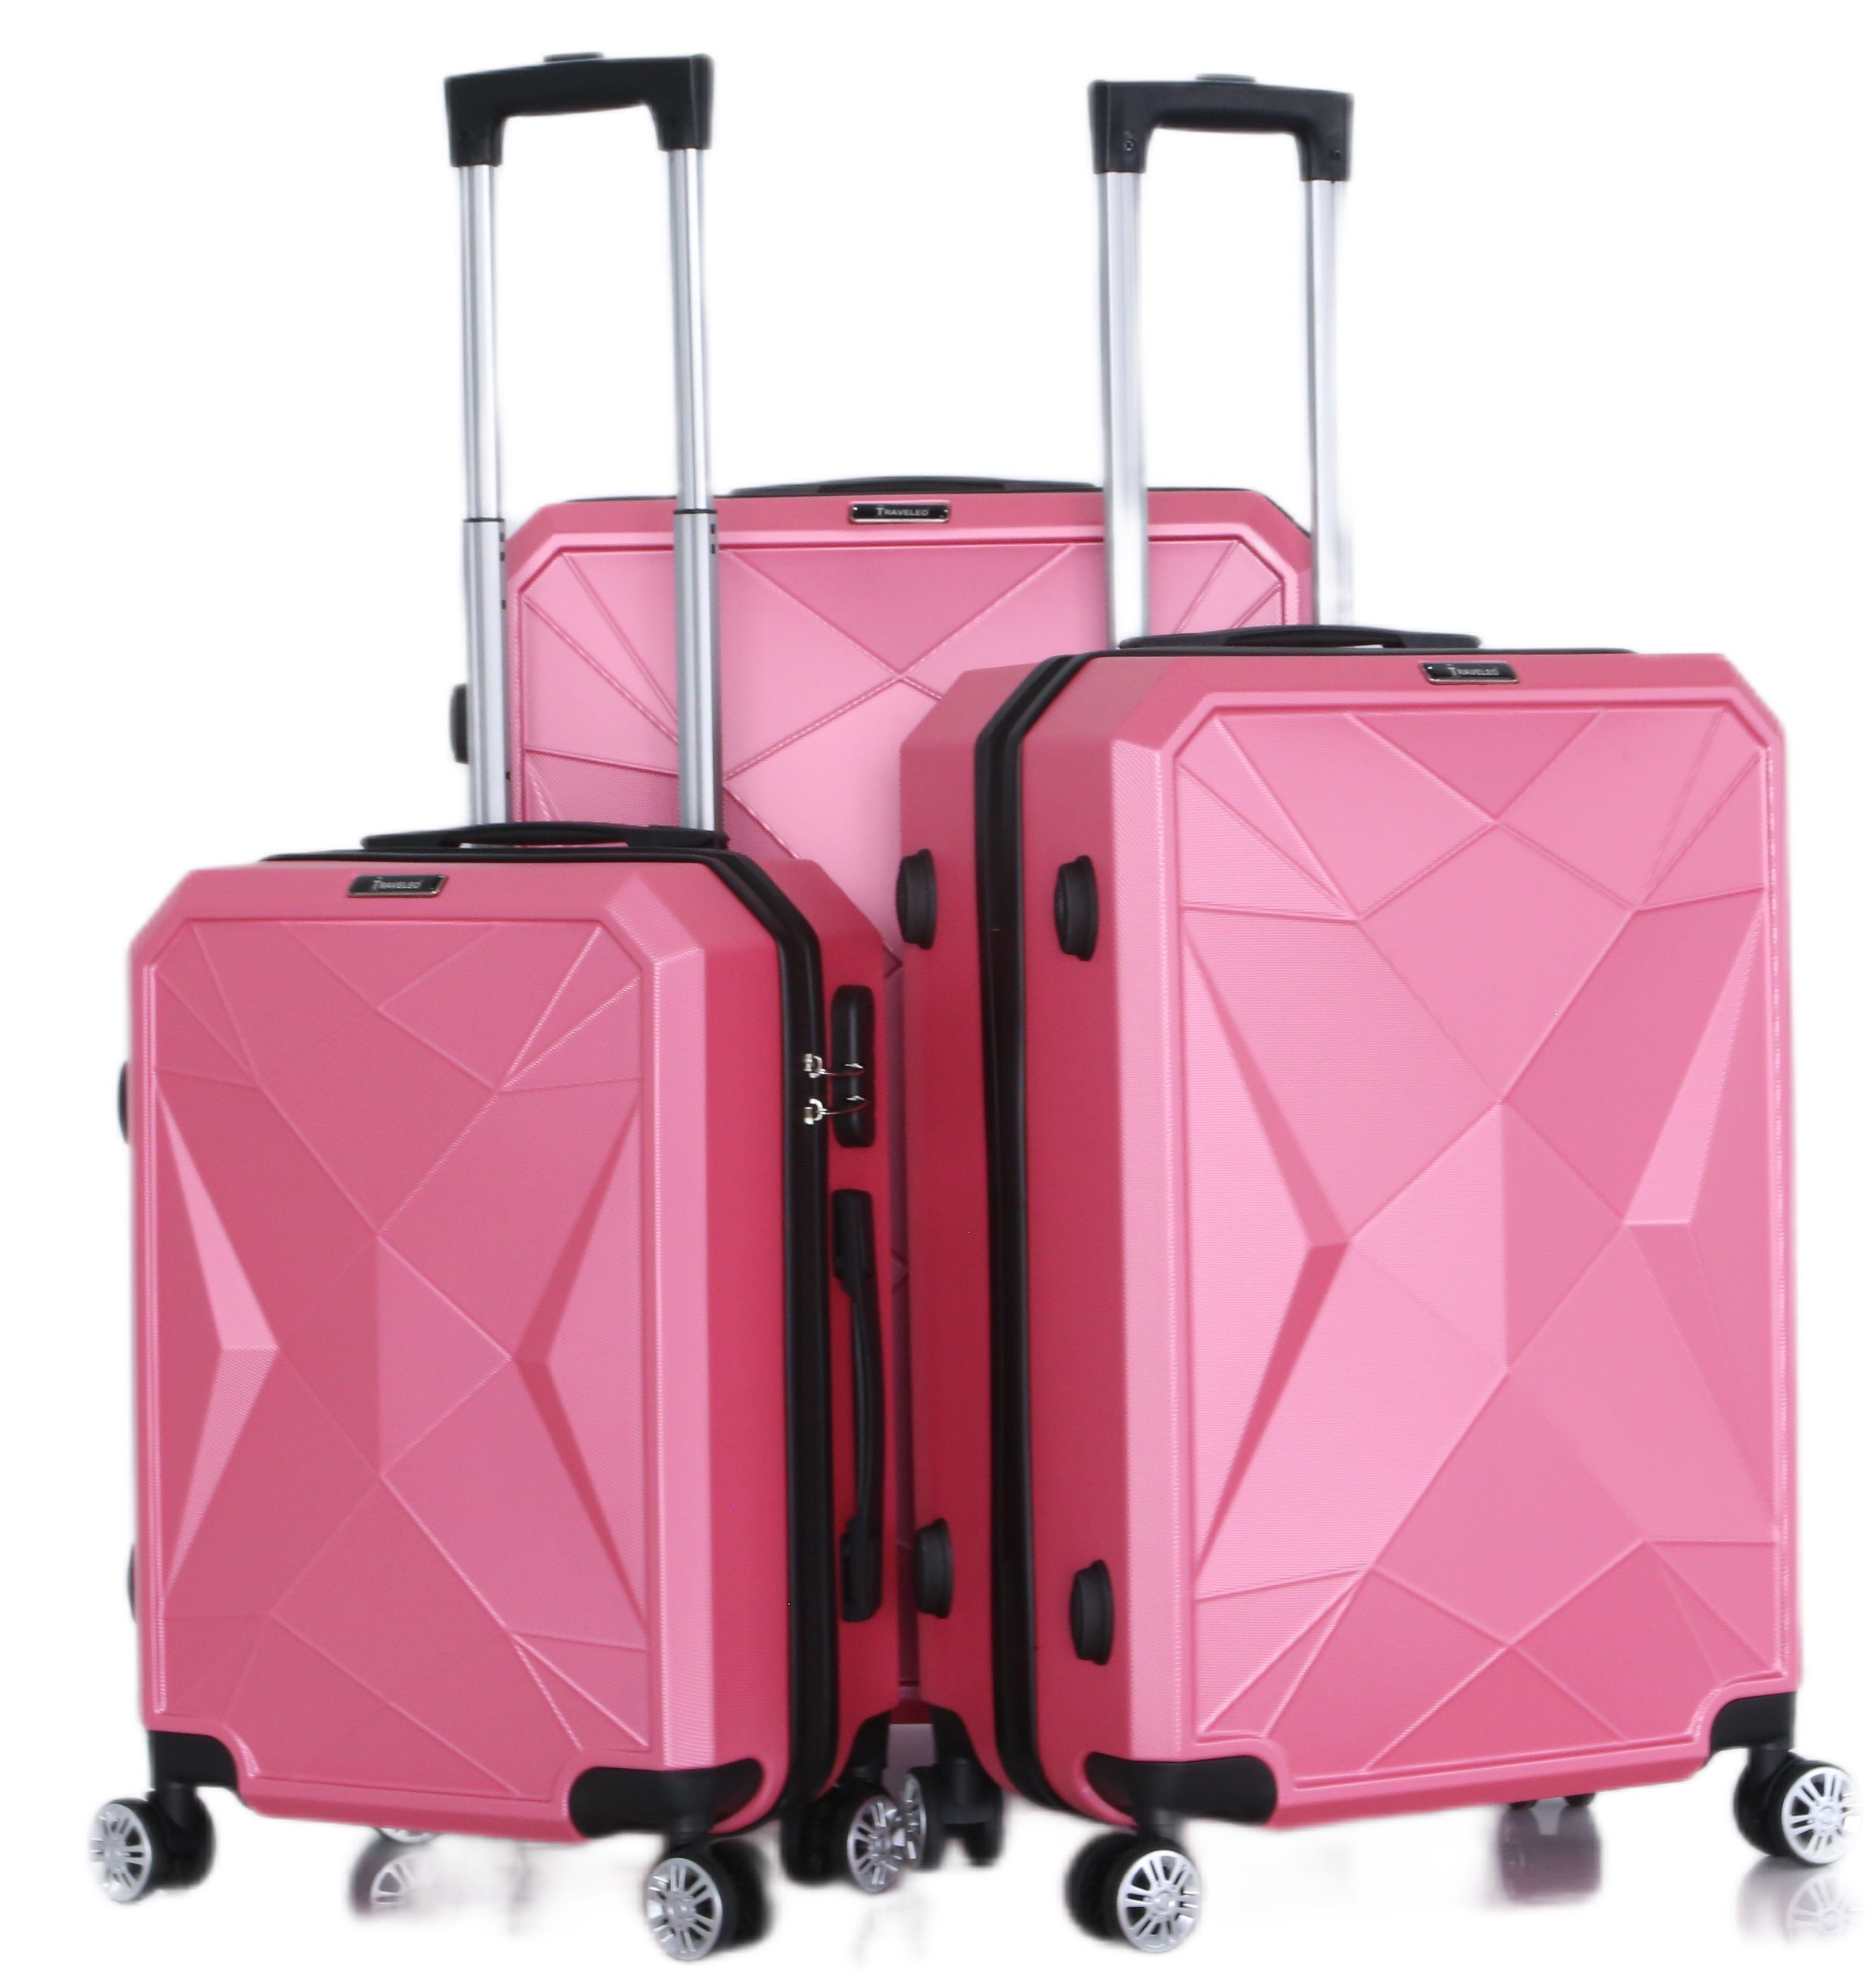 Handgepäck Reisekoffer Pink Cheffinger Gepäck Koffer Kofferset Reisetasche 3-teilig Kofferset